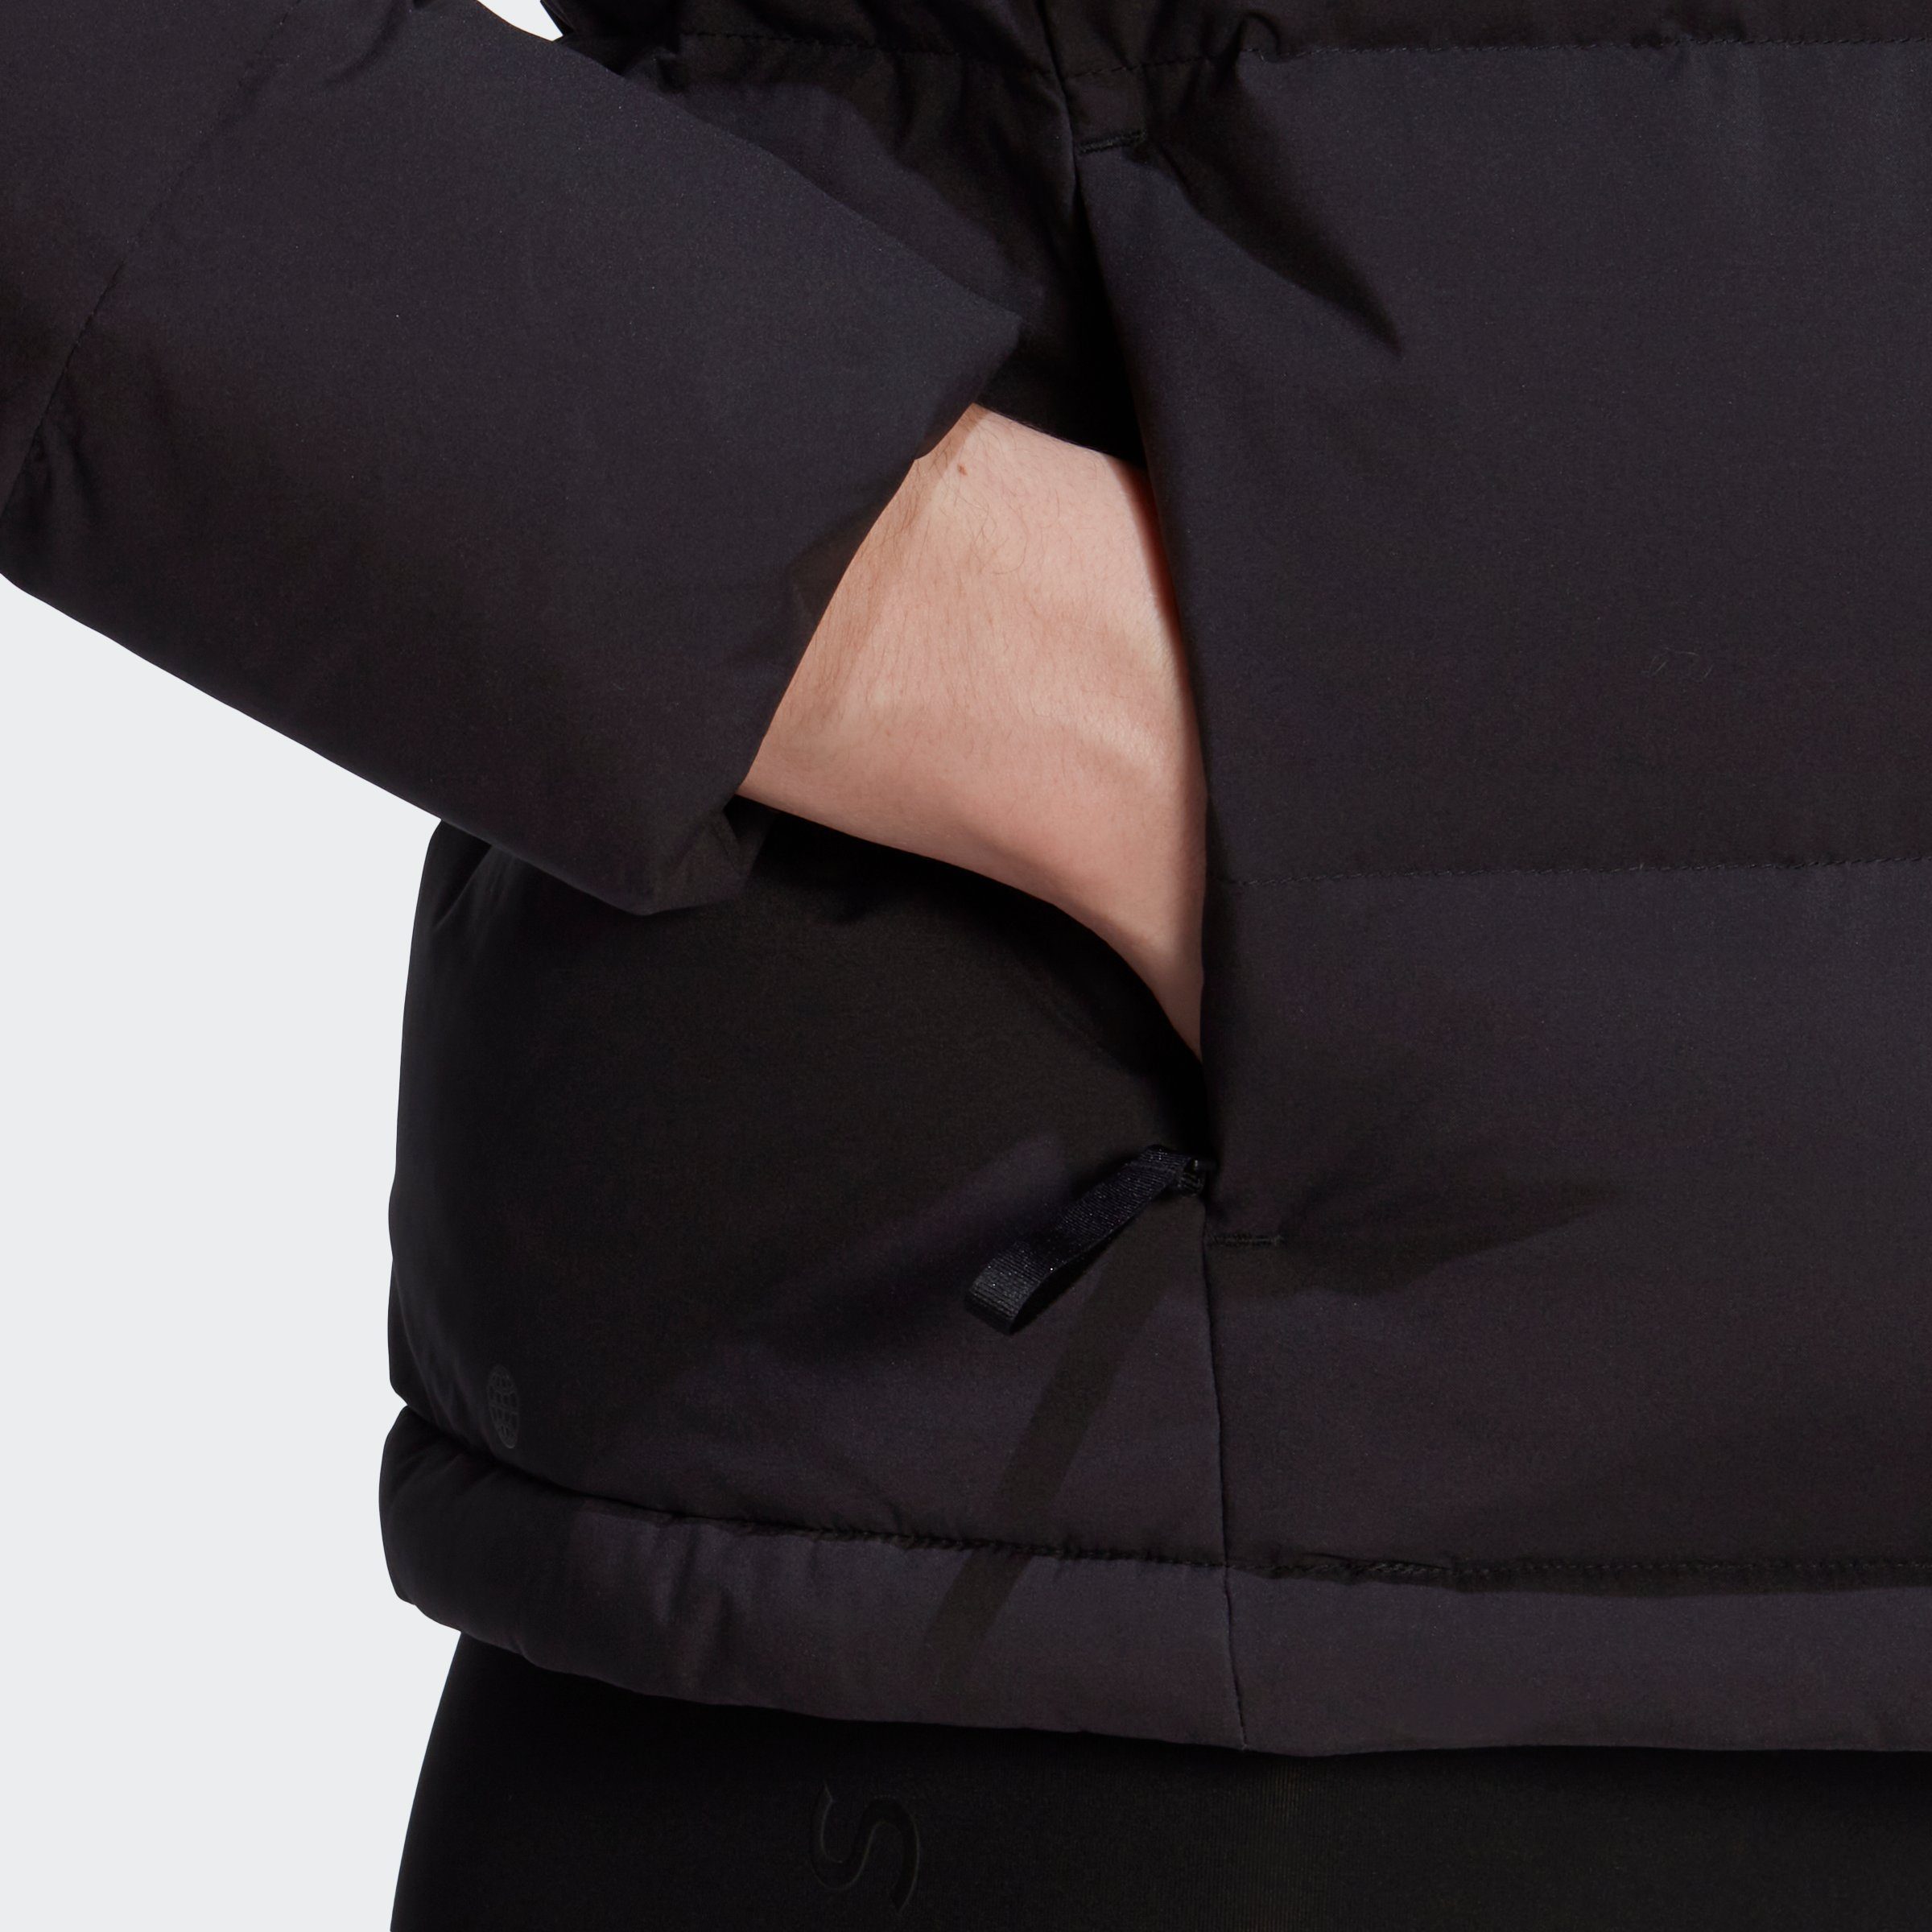 RELAXED DAUNENJACKE Sportswear Outdoorjacke schwarz HELIONIC adidas